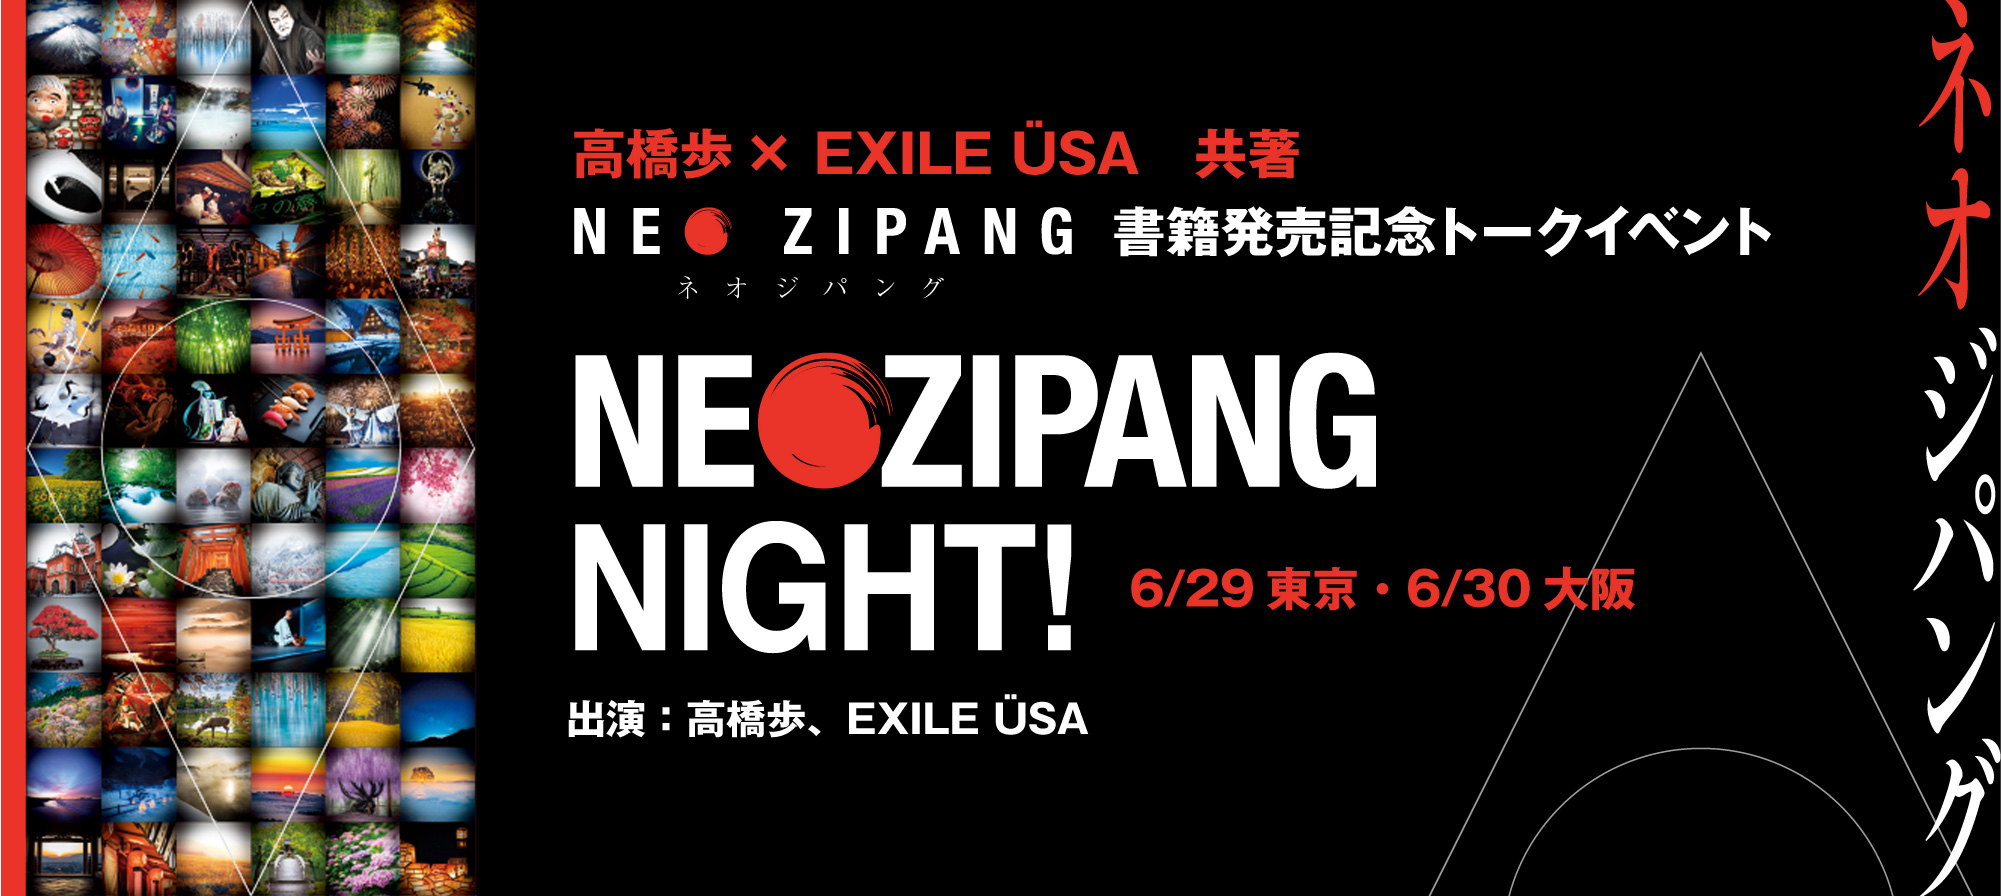 高橋歩×EXILE USA共著 NEO ZIPANG書籍発売記念トークイベント「NEO ZIPANG NIGHT!」